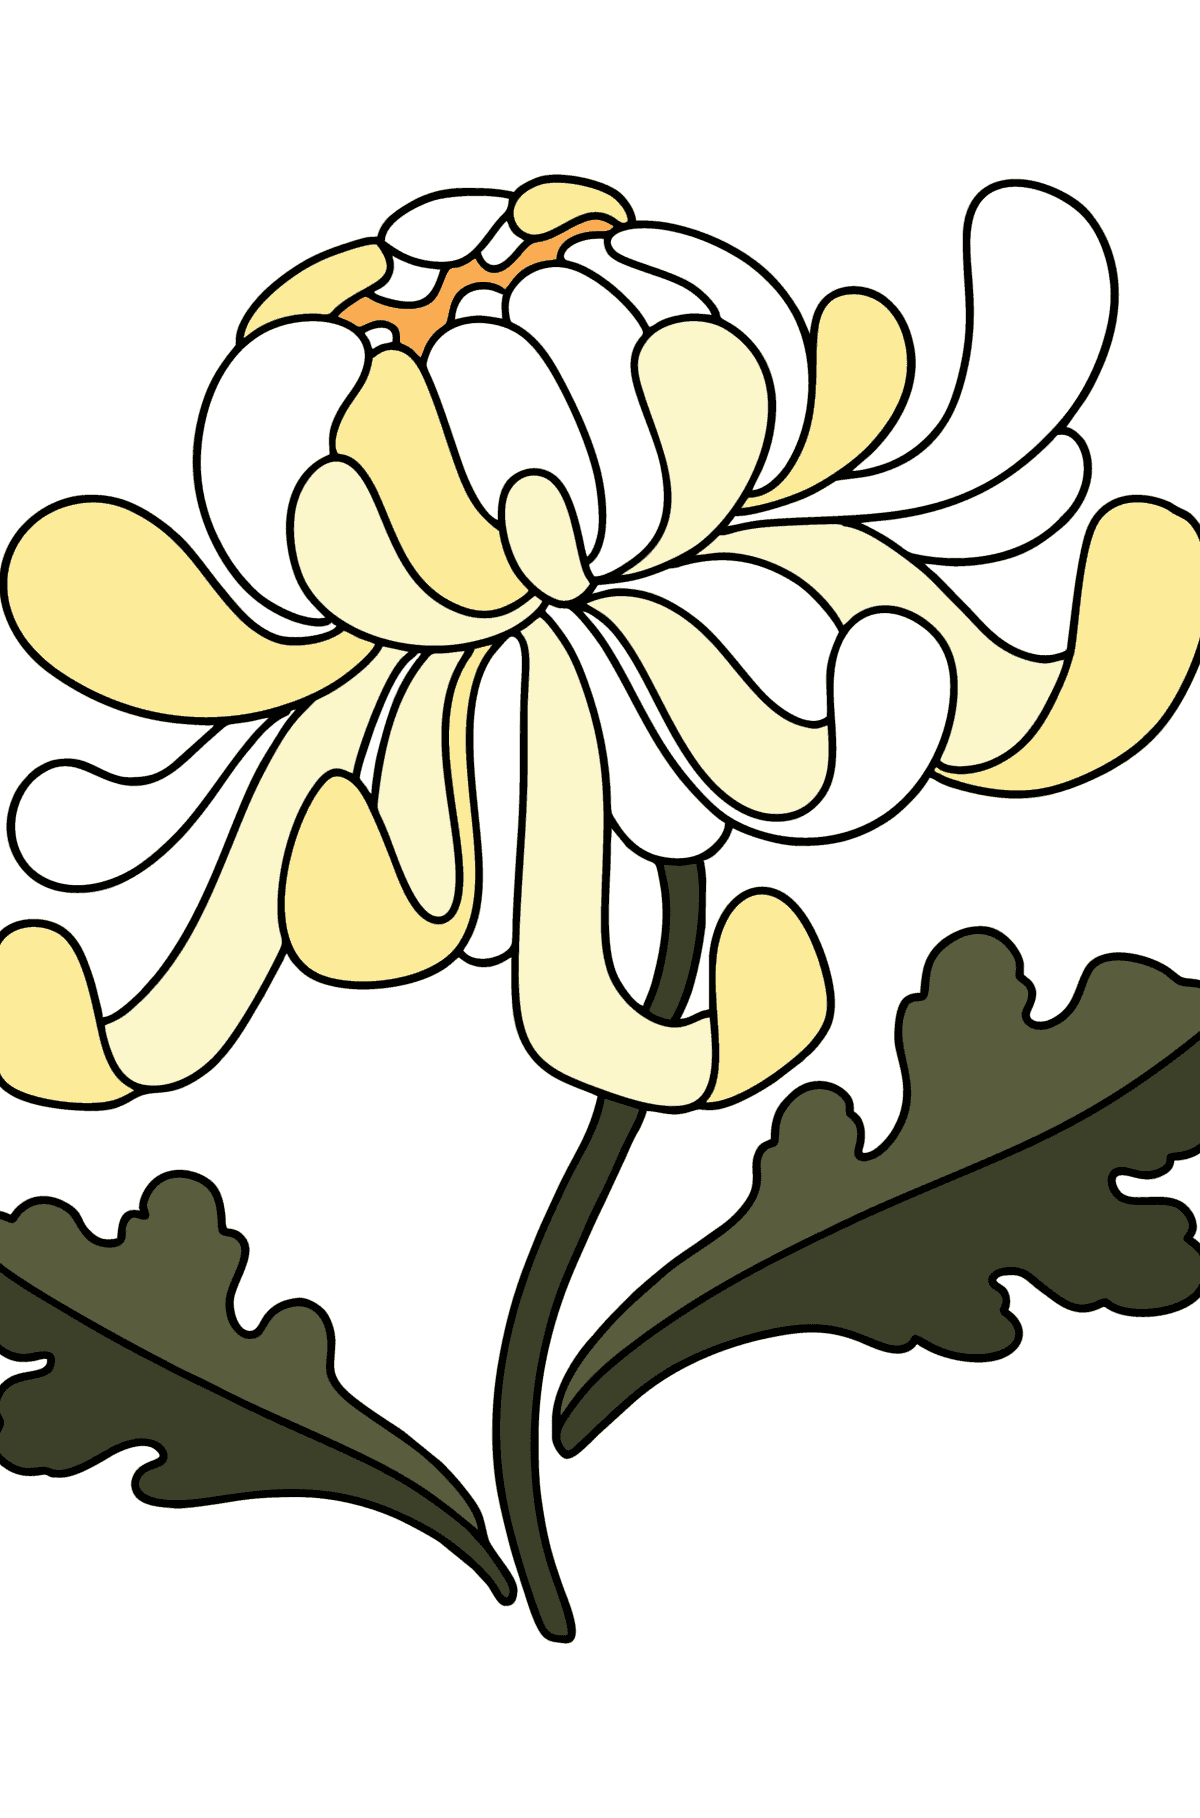 Ausmalbild Chrysanthemen - Malvorlagen für Kinder